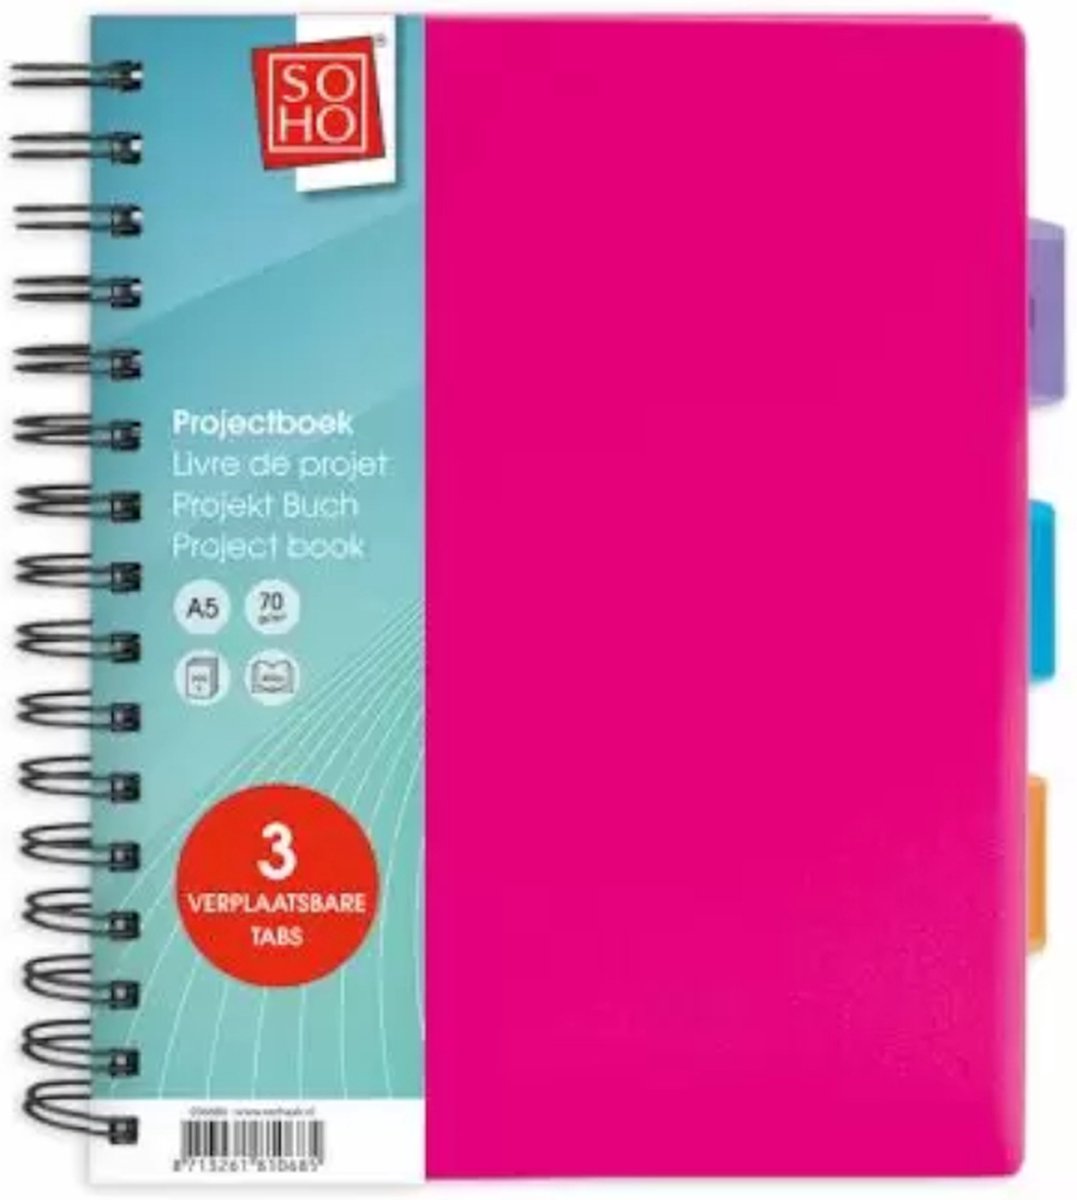 Soho Projectboek A5 3tabs 200vel - Pink Roze - Gratis Verzonden